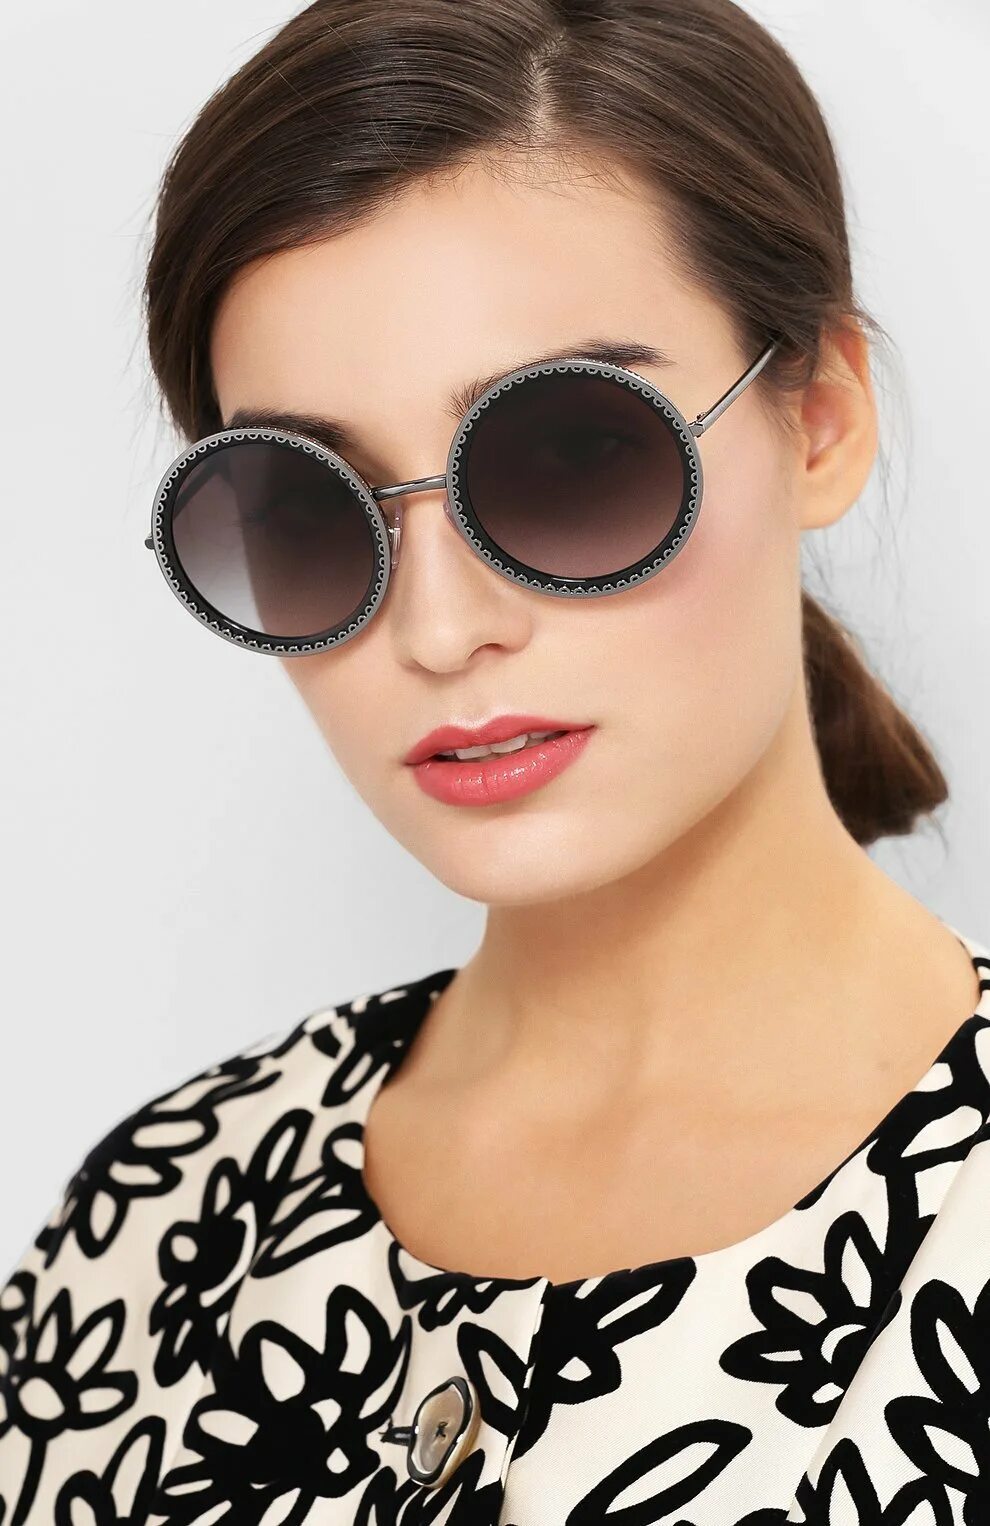 Очки Дольче Габбана. Очки Dolce Gabbana 6050. Солнечные очки Дольче Габбана. Очки Дольче Габбана женские солнцезащитные. Солнцезащитные очки dolce